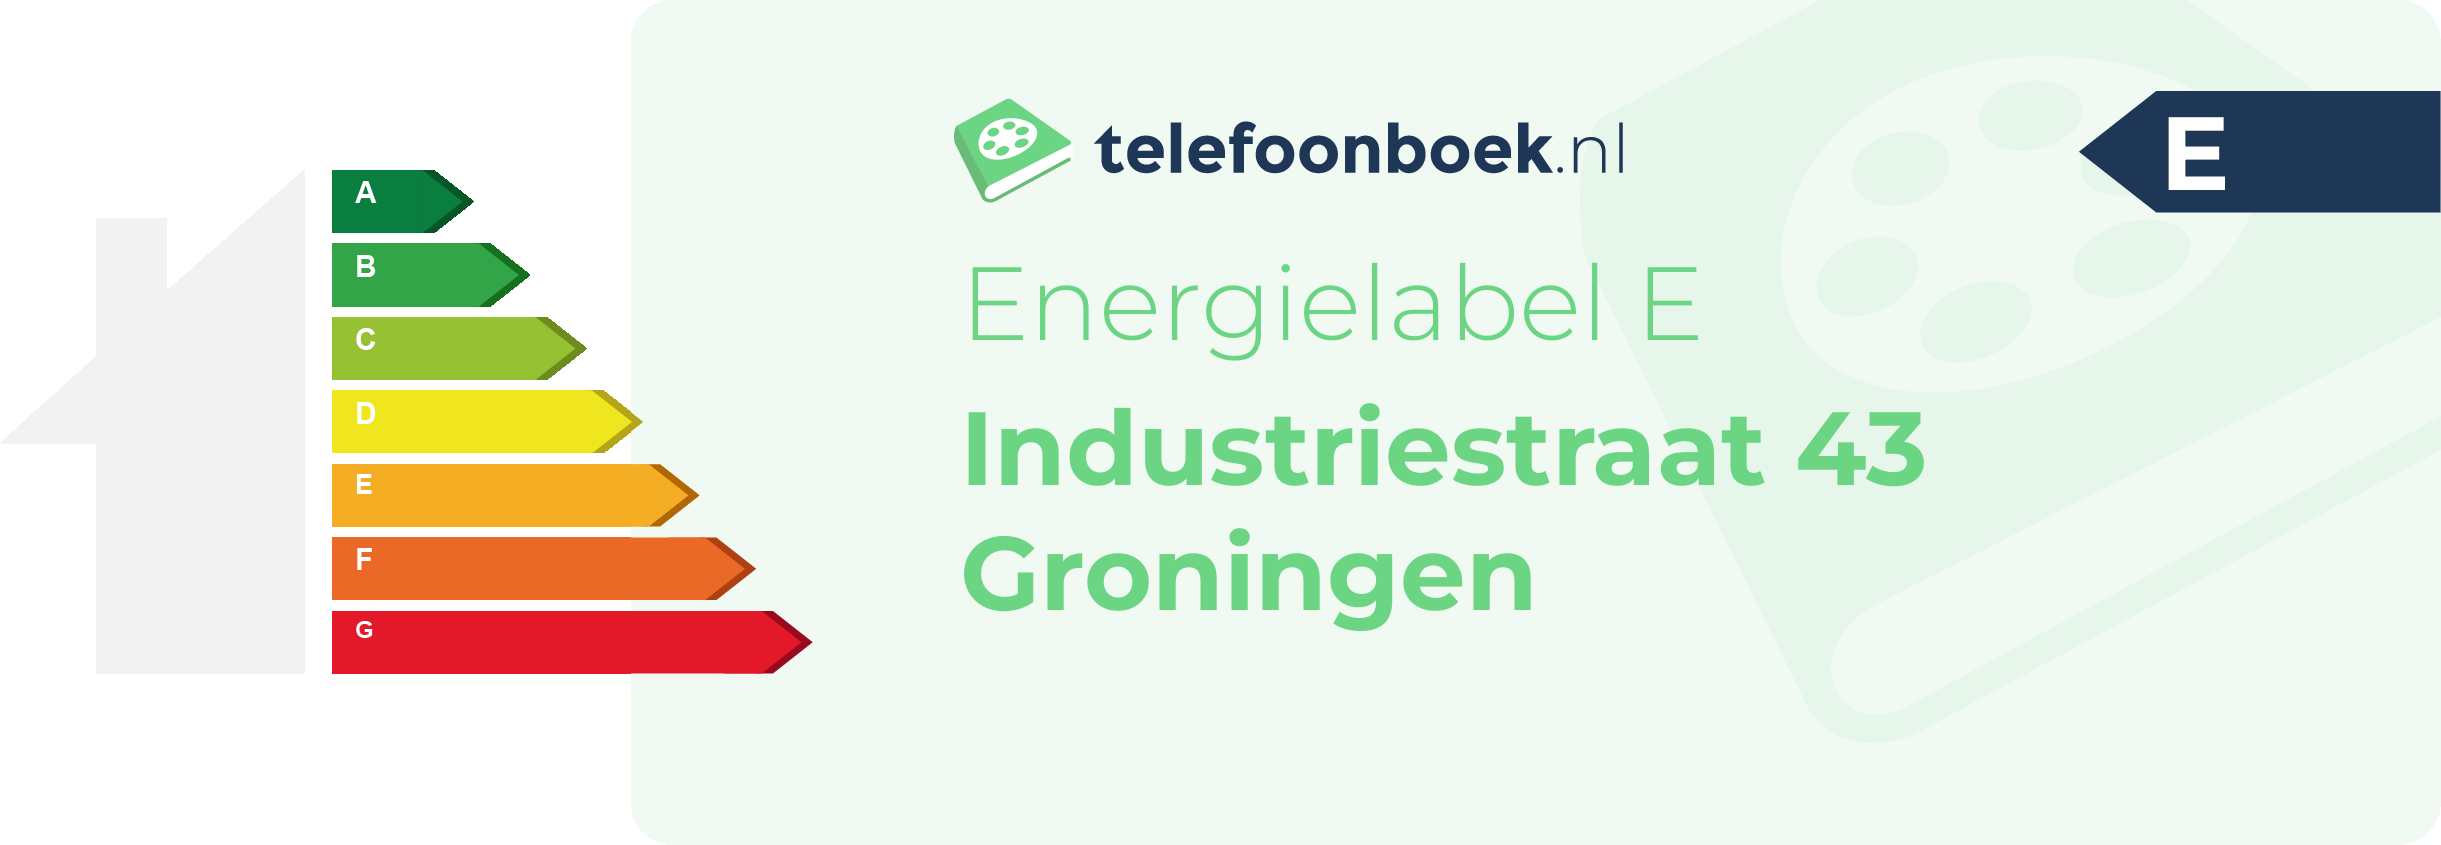 Energielabel Industriestraat 43 Groningen